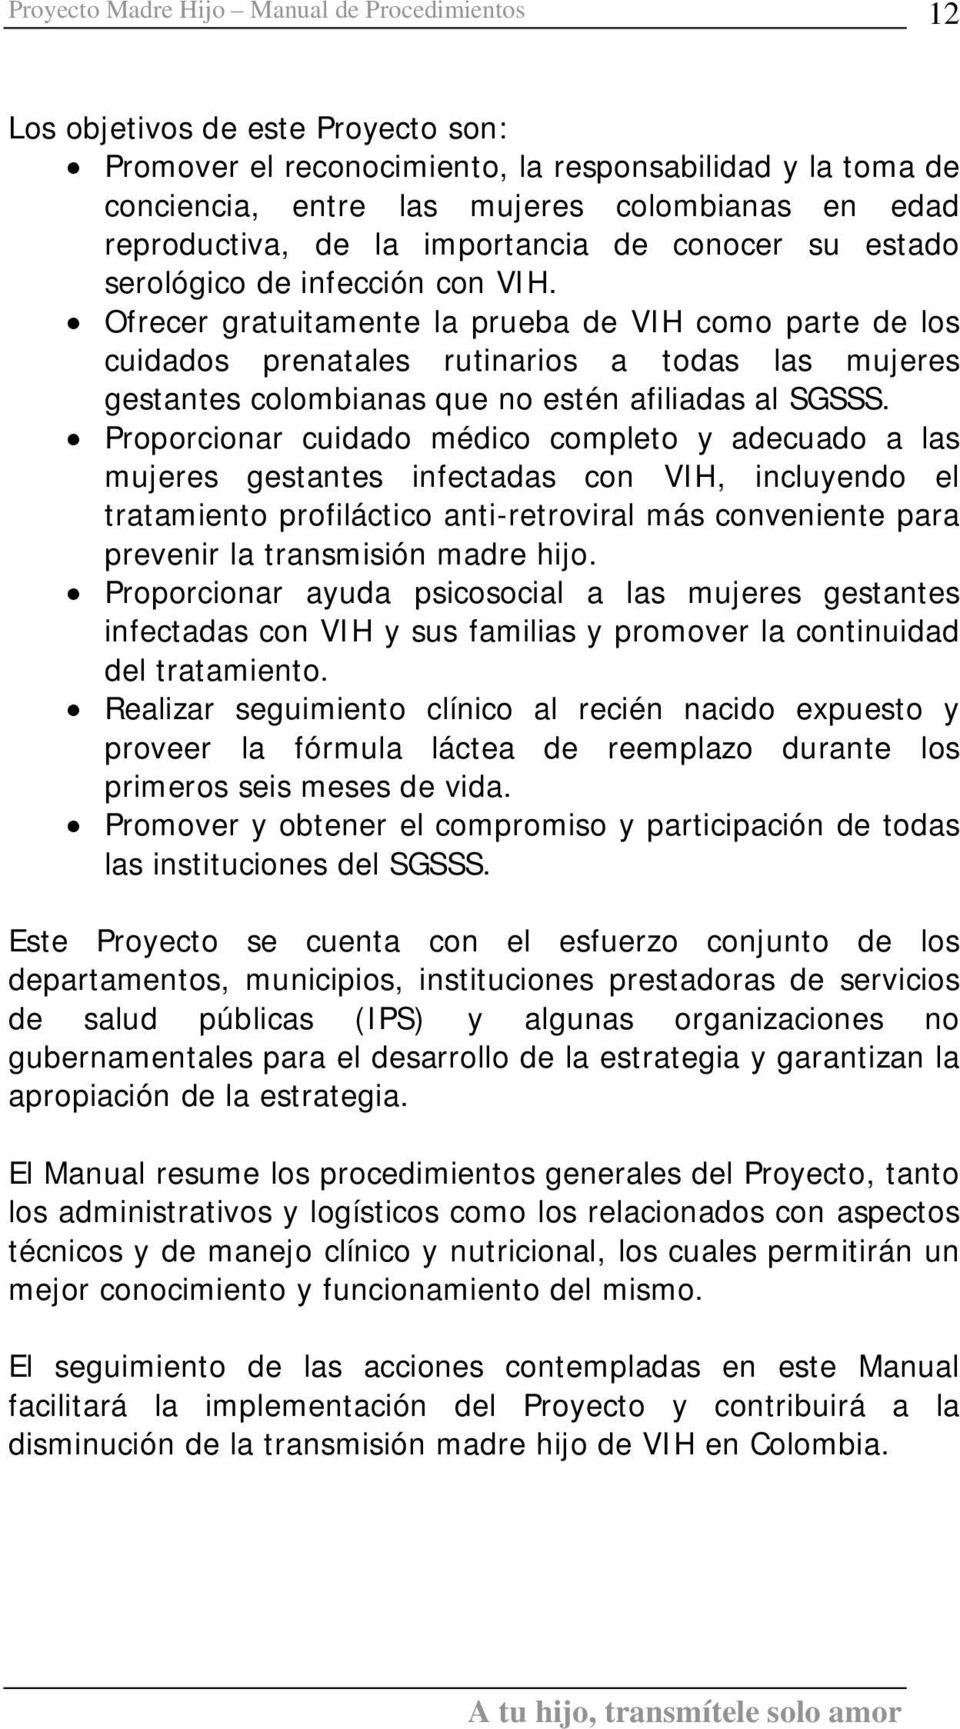 Ofrecer gratuitamente la prueba de VIH como parte de los cuidados prenatales rutinarios a todas las mujeres gestantes colombianas que no estén afiliadas al SGSSS.